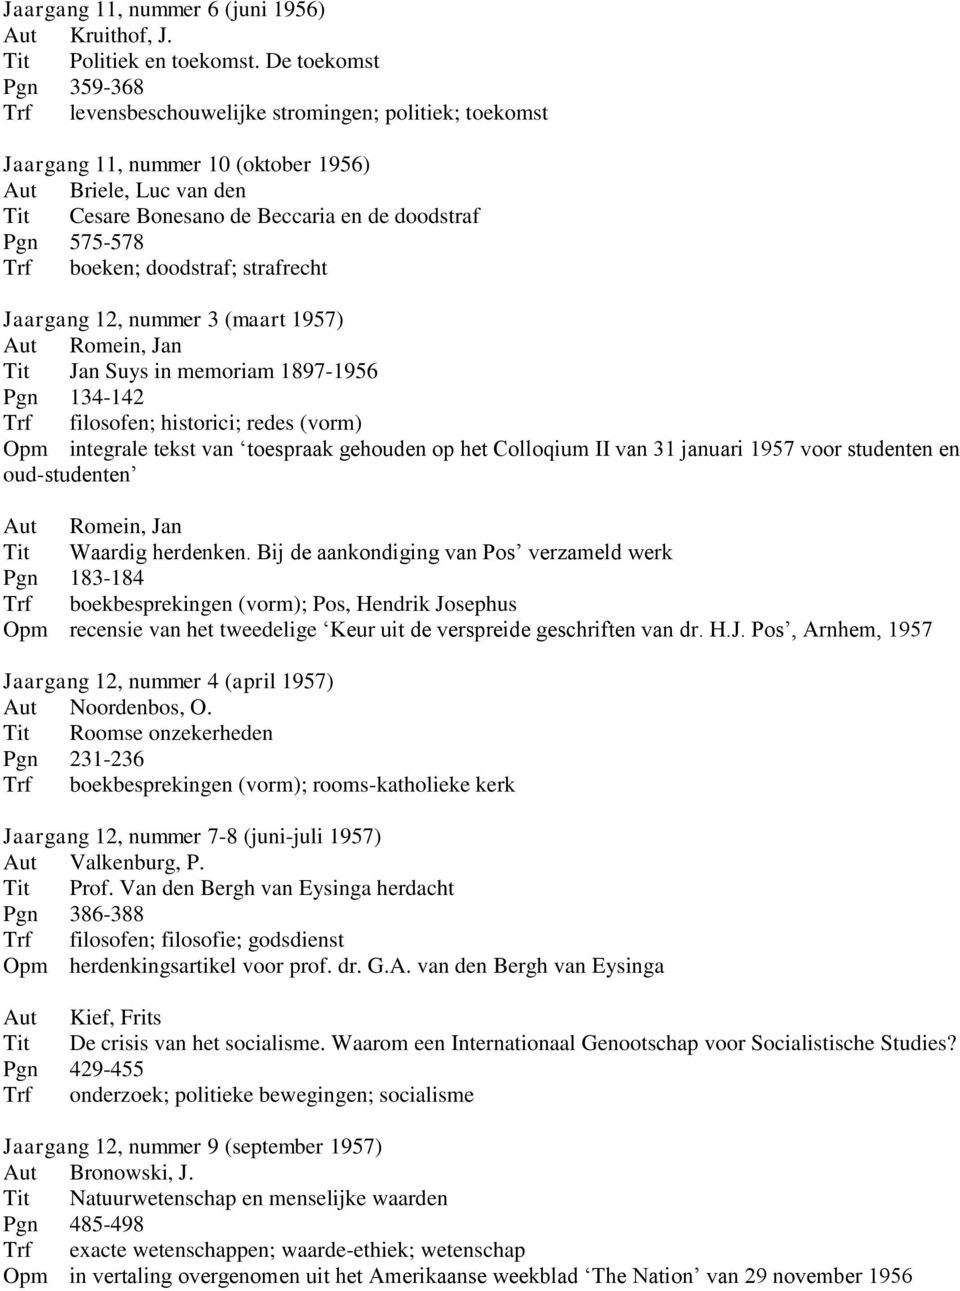 575-578 Trf boeken; doodstraf; strafrecht Jaargang 12, nummer 3 (maart 1957) Aut Romein, Jan Tit Jan Suys in memoriam 1897-1956 Pgn 134-142 Trf filosofen; historici; redes (vorm) Opm integrale tekst